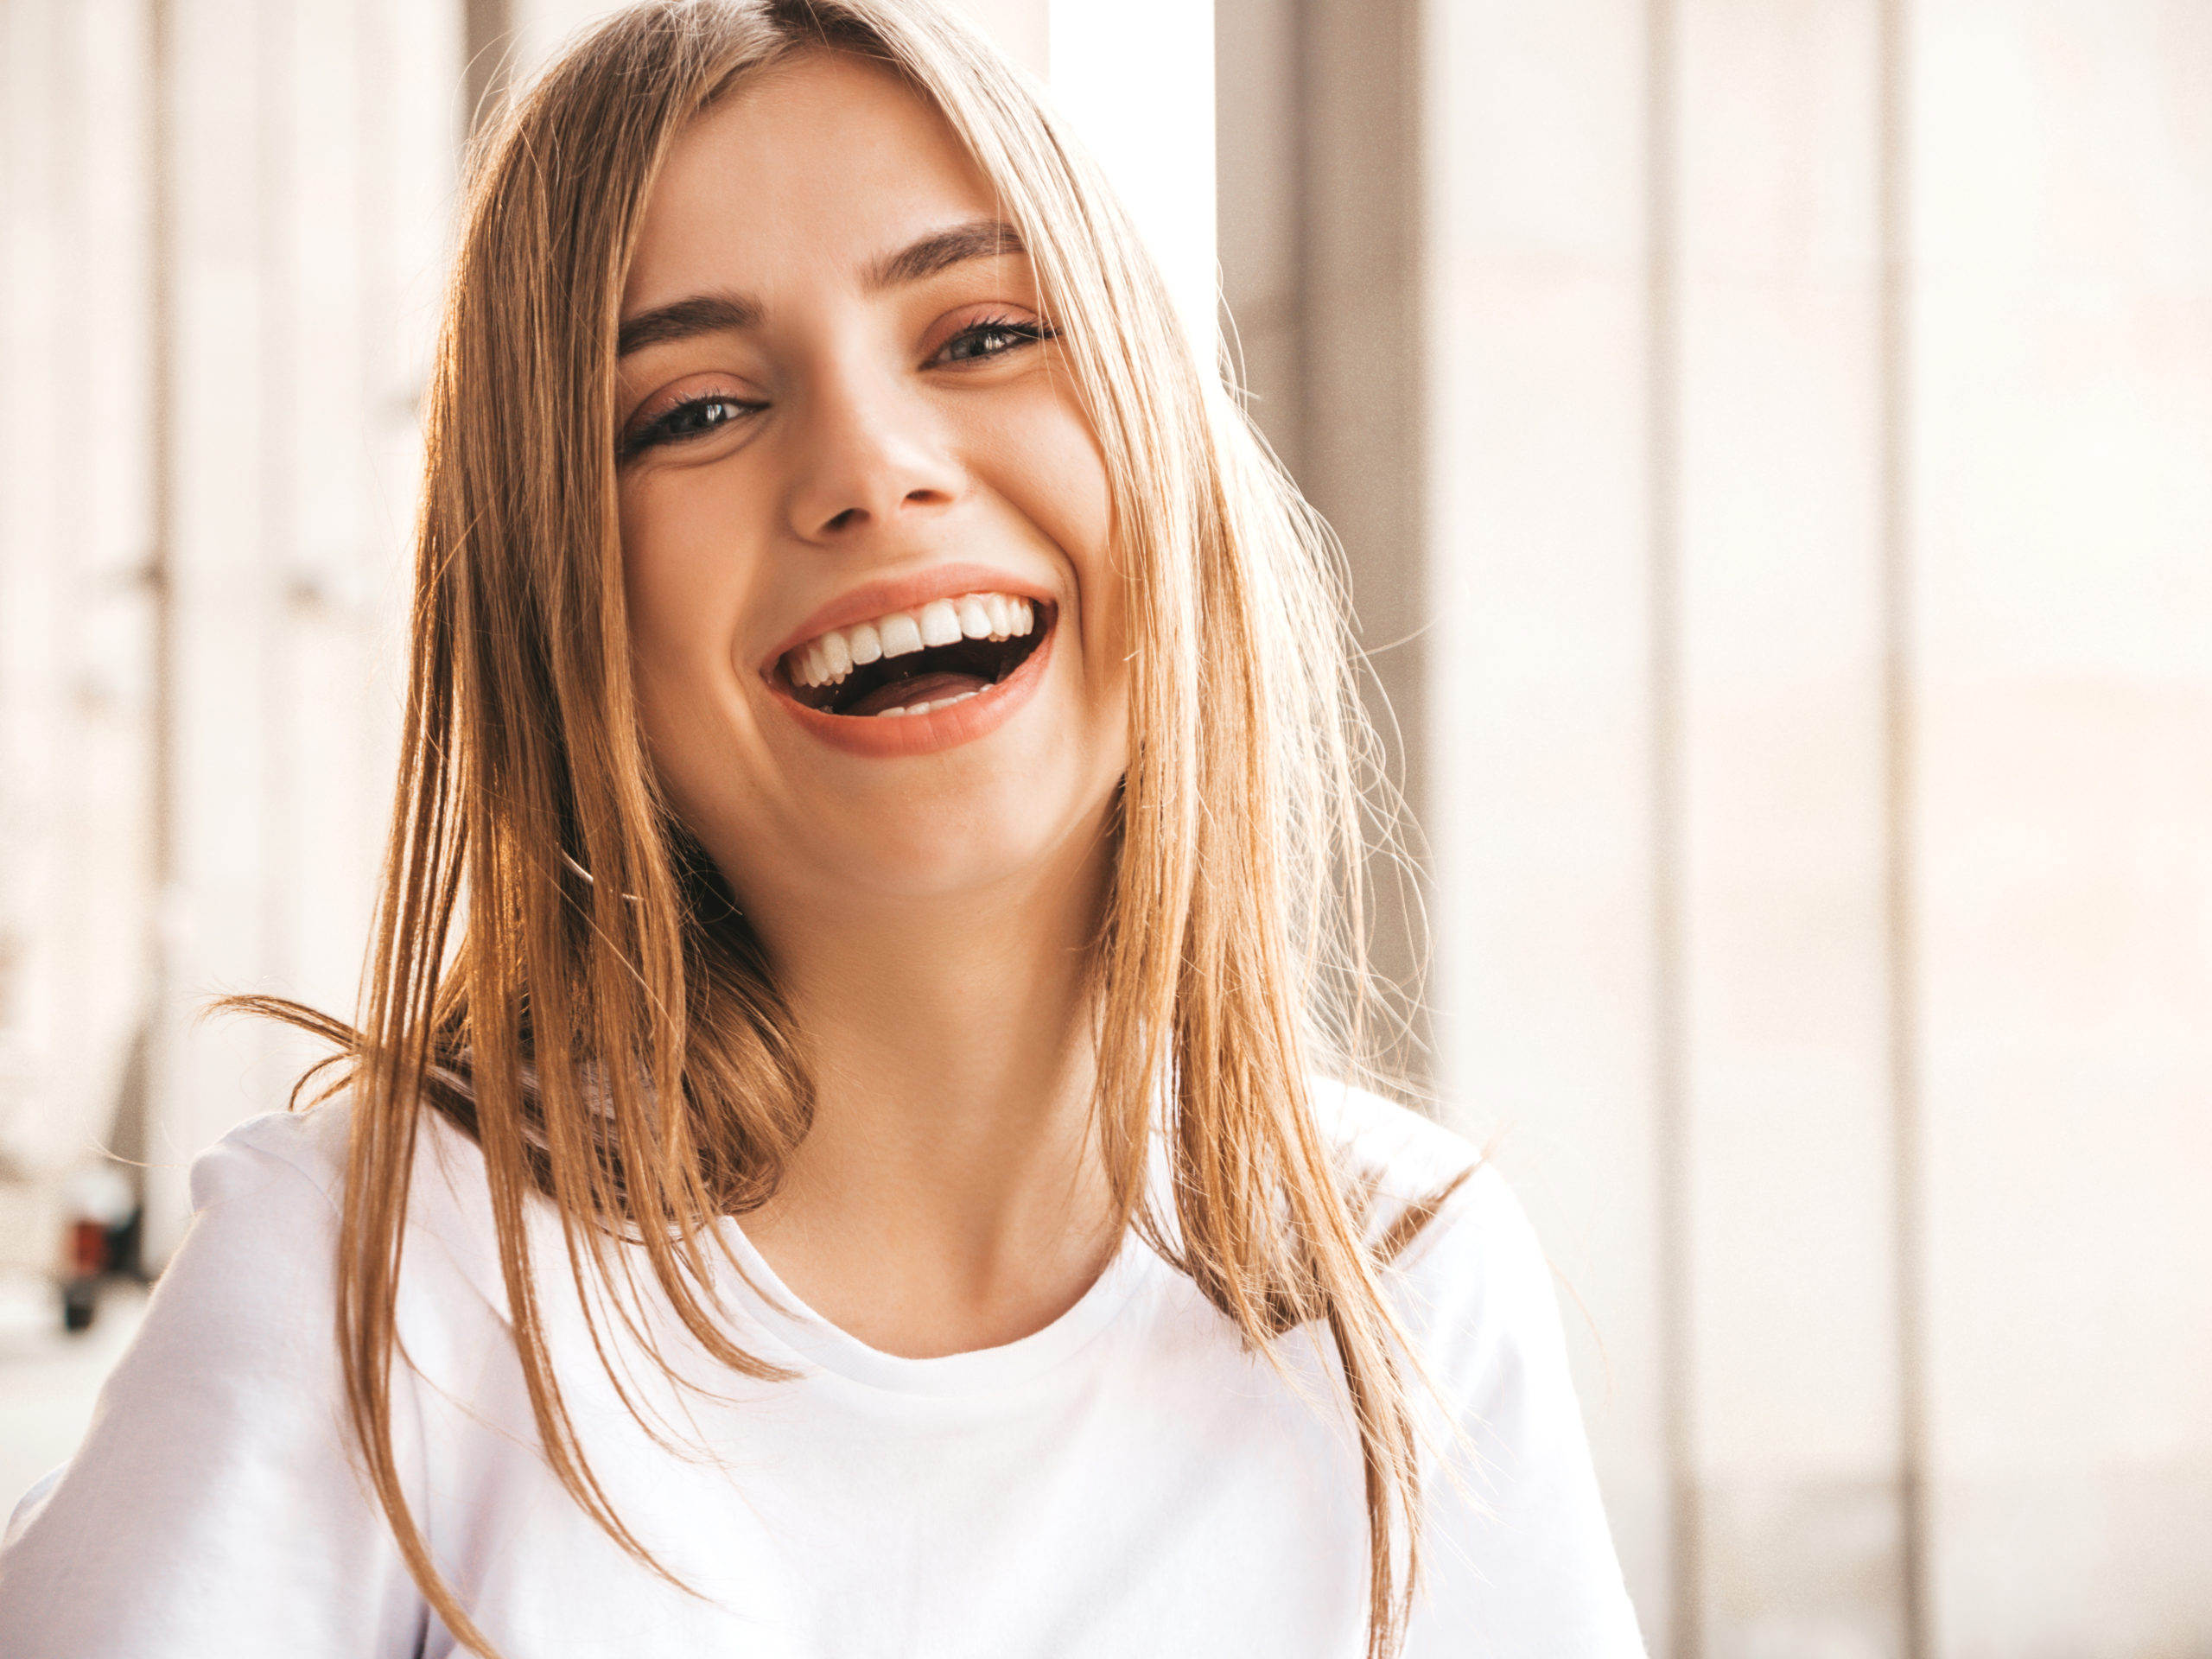 Reabilitação do sorriso: mude sua vida e volte a sorrir